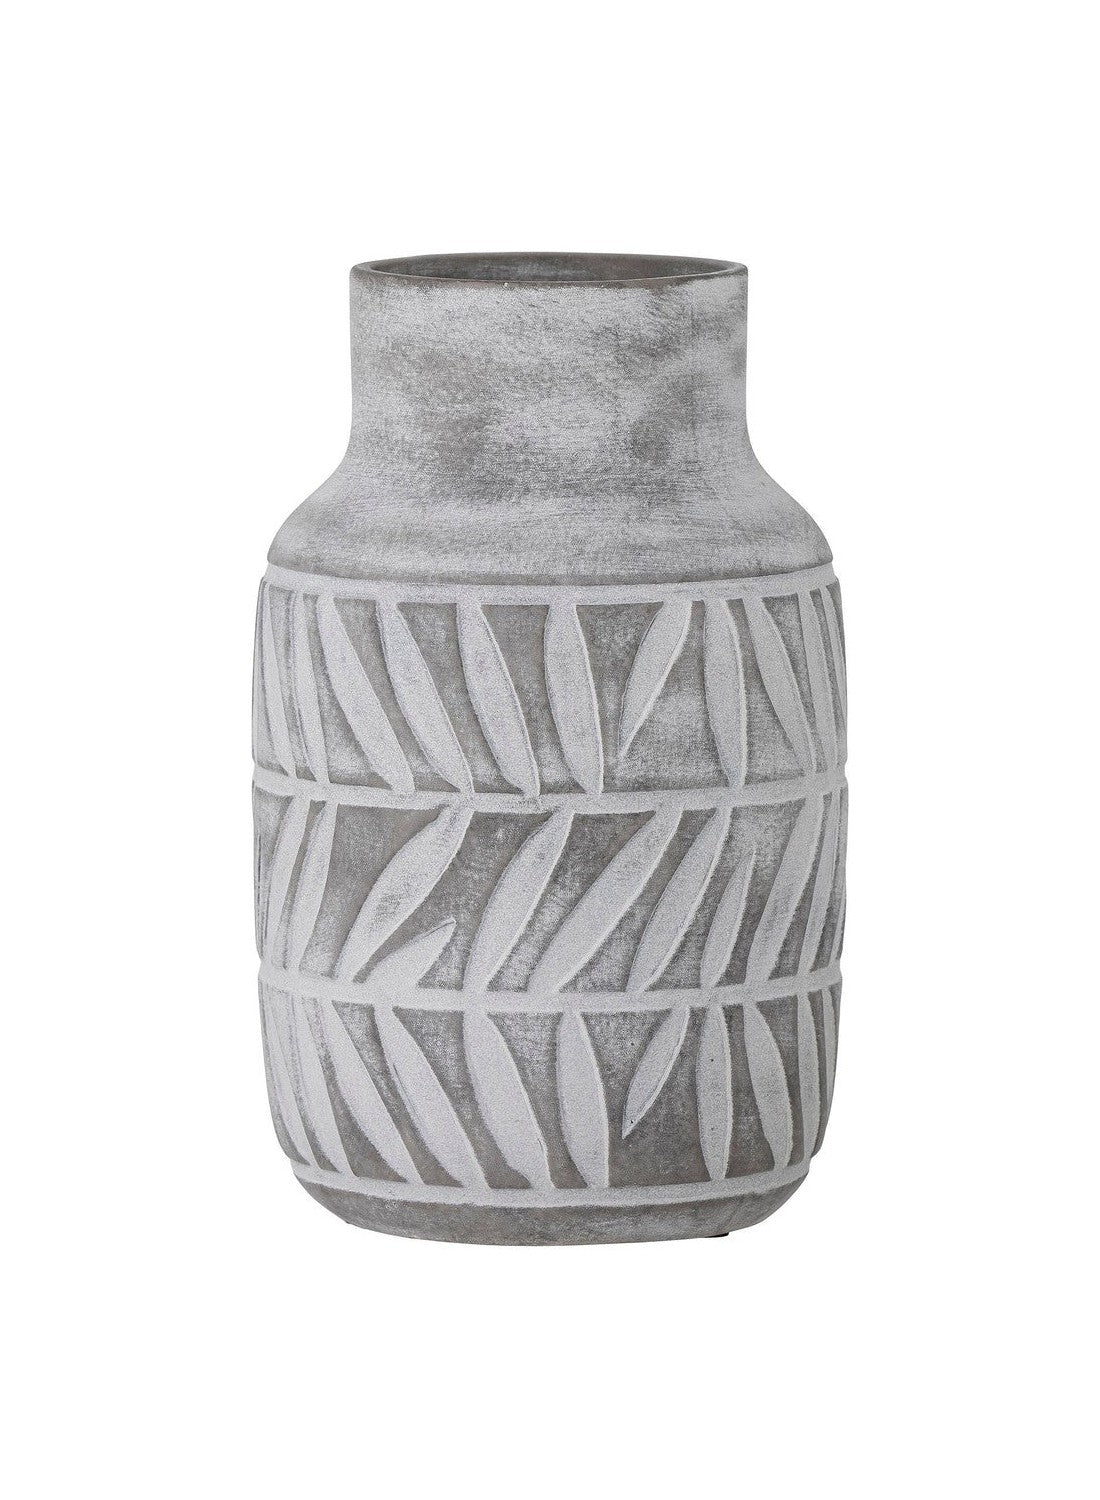 Jarrón Saku de Bloomingville, gris, cerámica